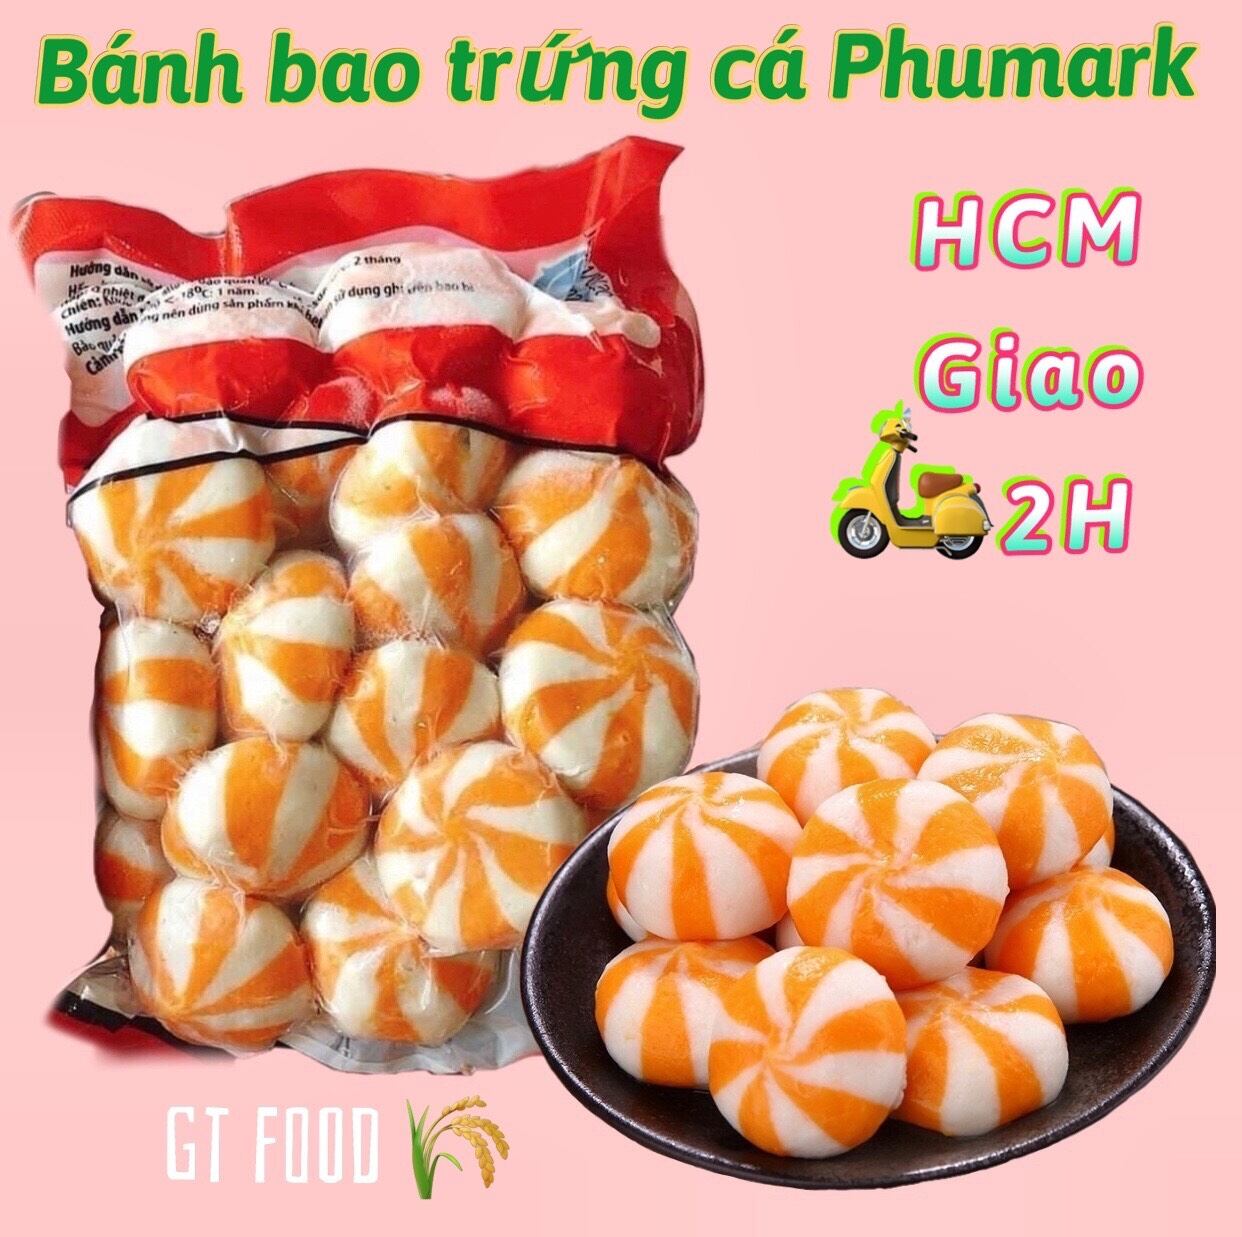 Bánh bao nhân trứng cá Phumark túi 500g 30v- Ship nhanh HCM